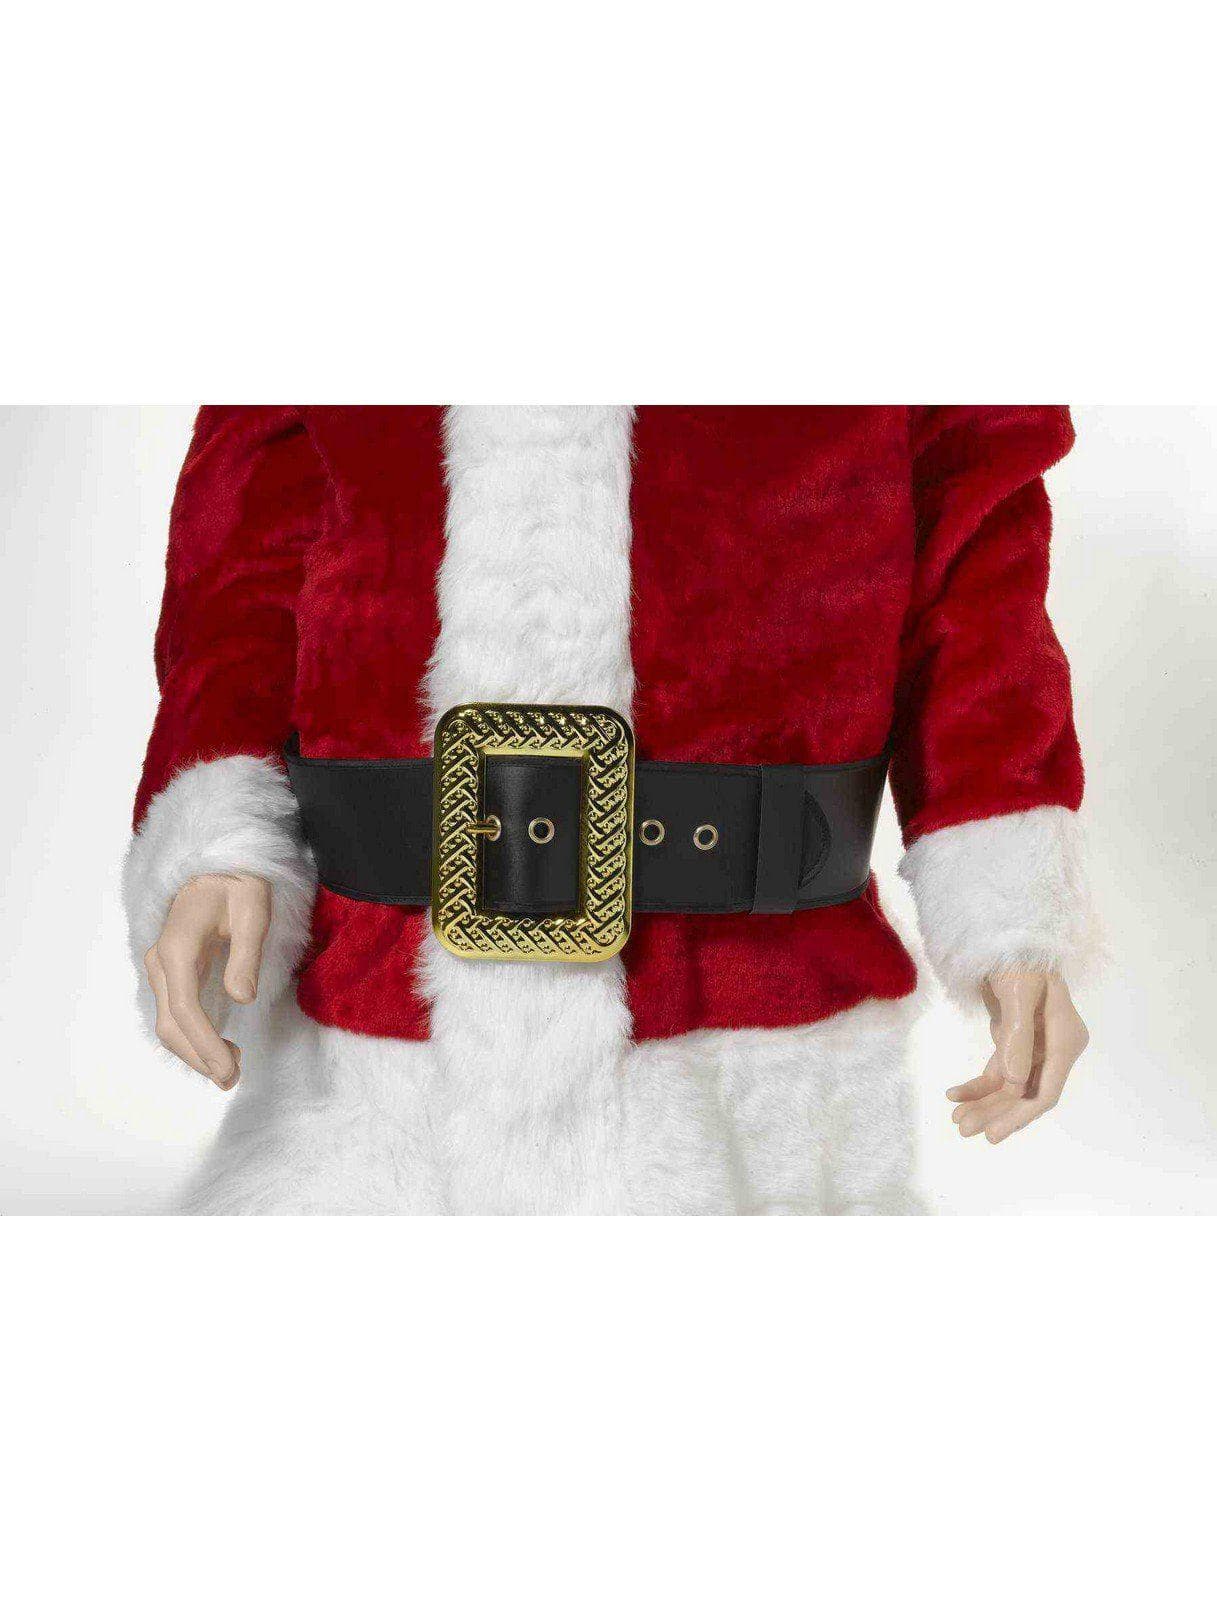 Men's Black and Gold Santa Belt - Deluxe - costumes.com